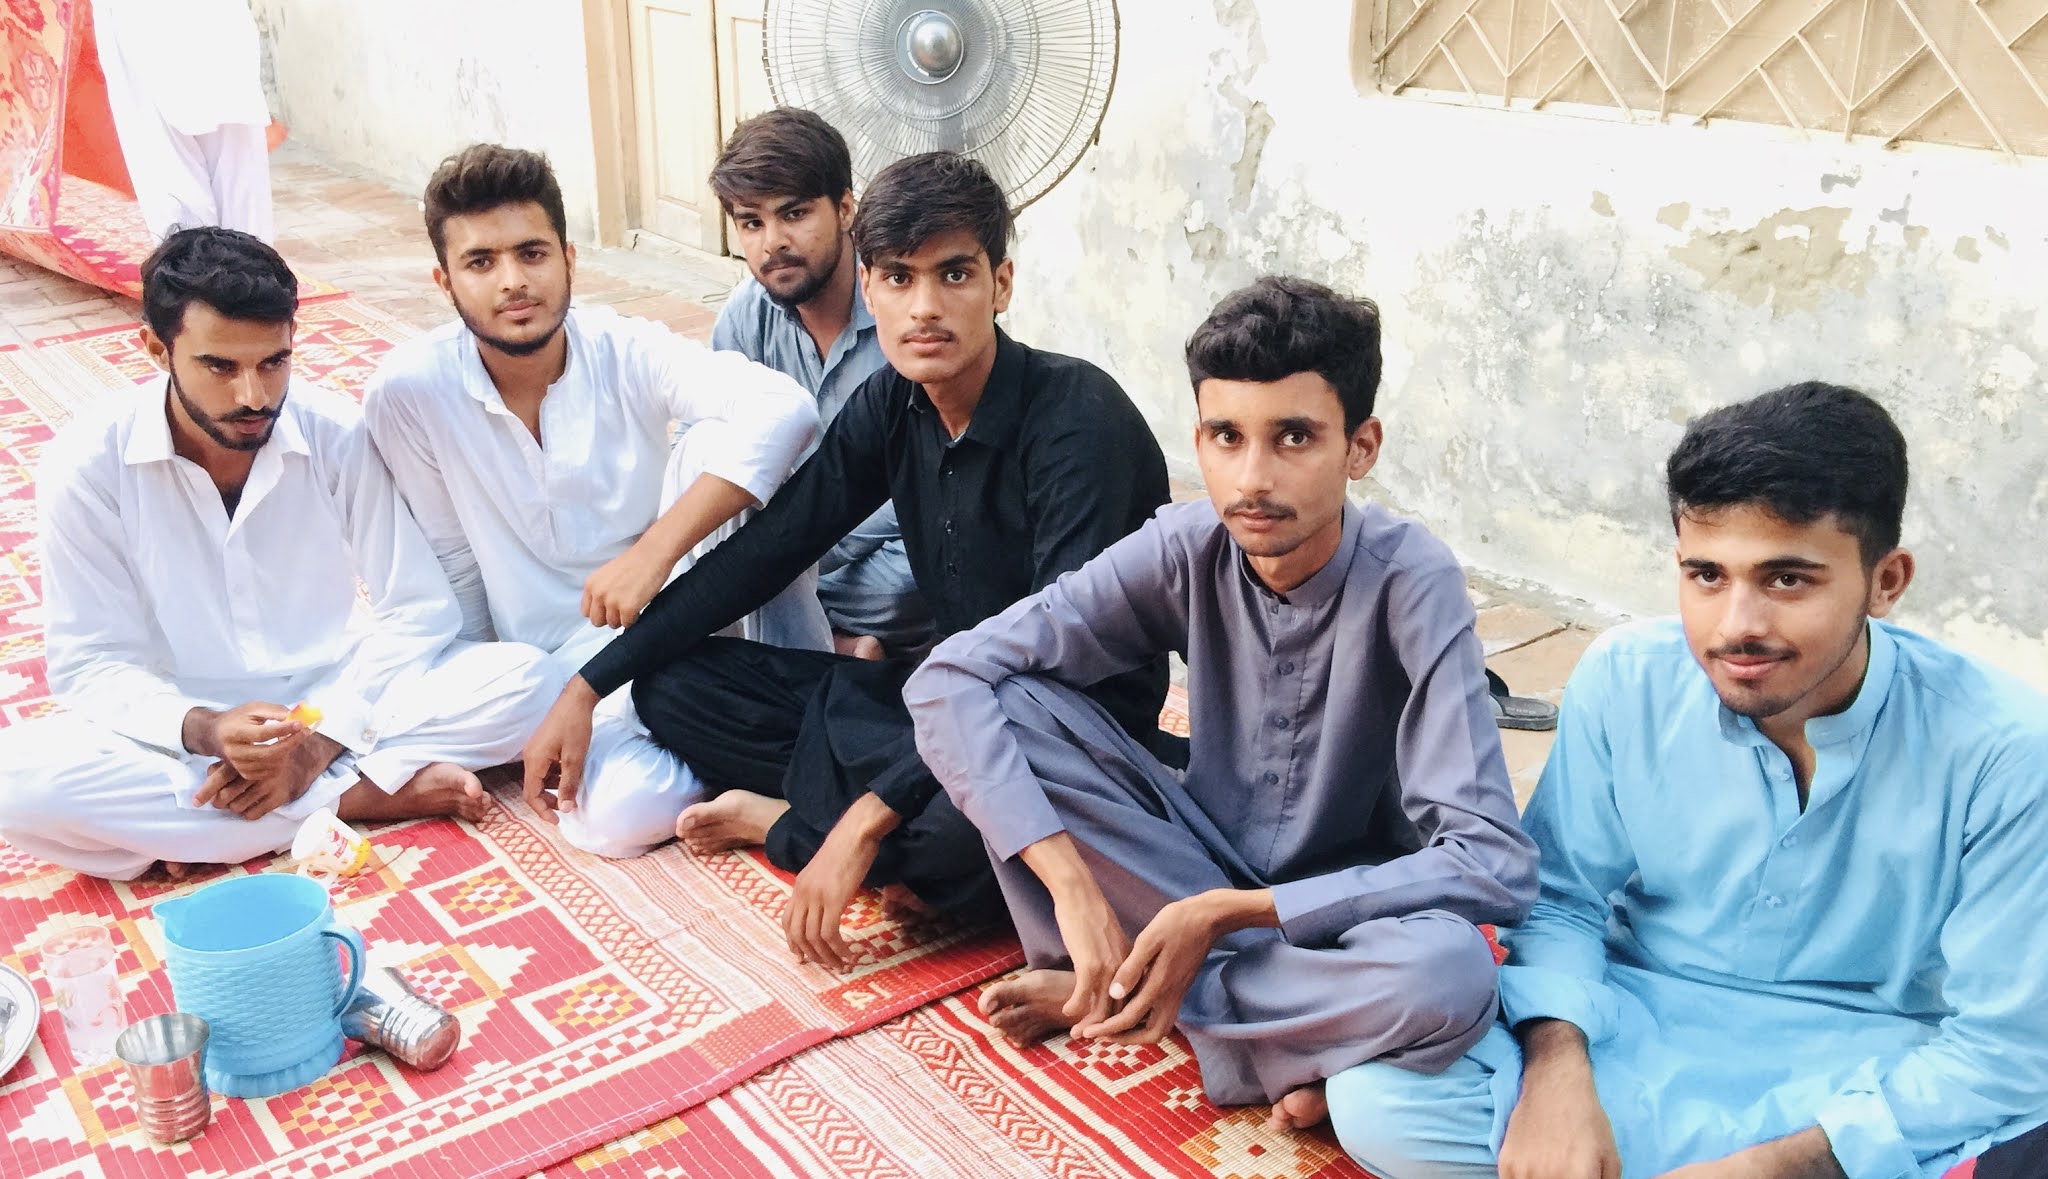 007 Group of Chakwal at Mulhal Mughlan